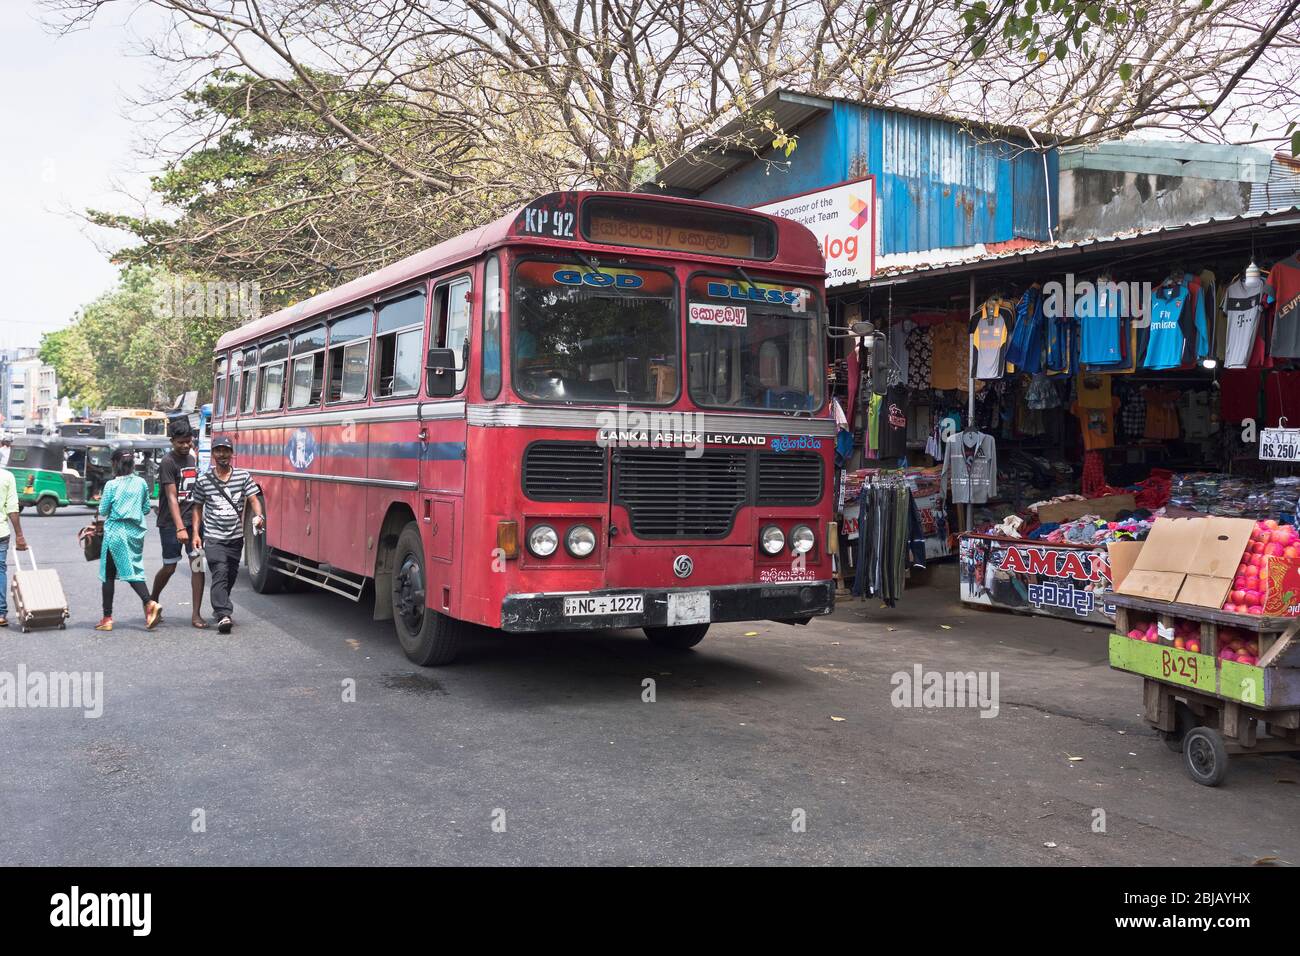 dh Lanka Ashok Leyland bus COLOMBO MARCHÉ SRI LANKA ASIE Marché asiatique Office des transports en commun Red bus à un étage local déplacement Banque D'Images